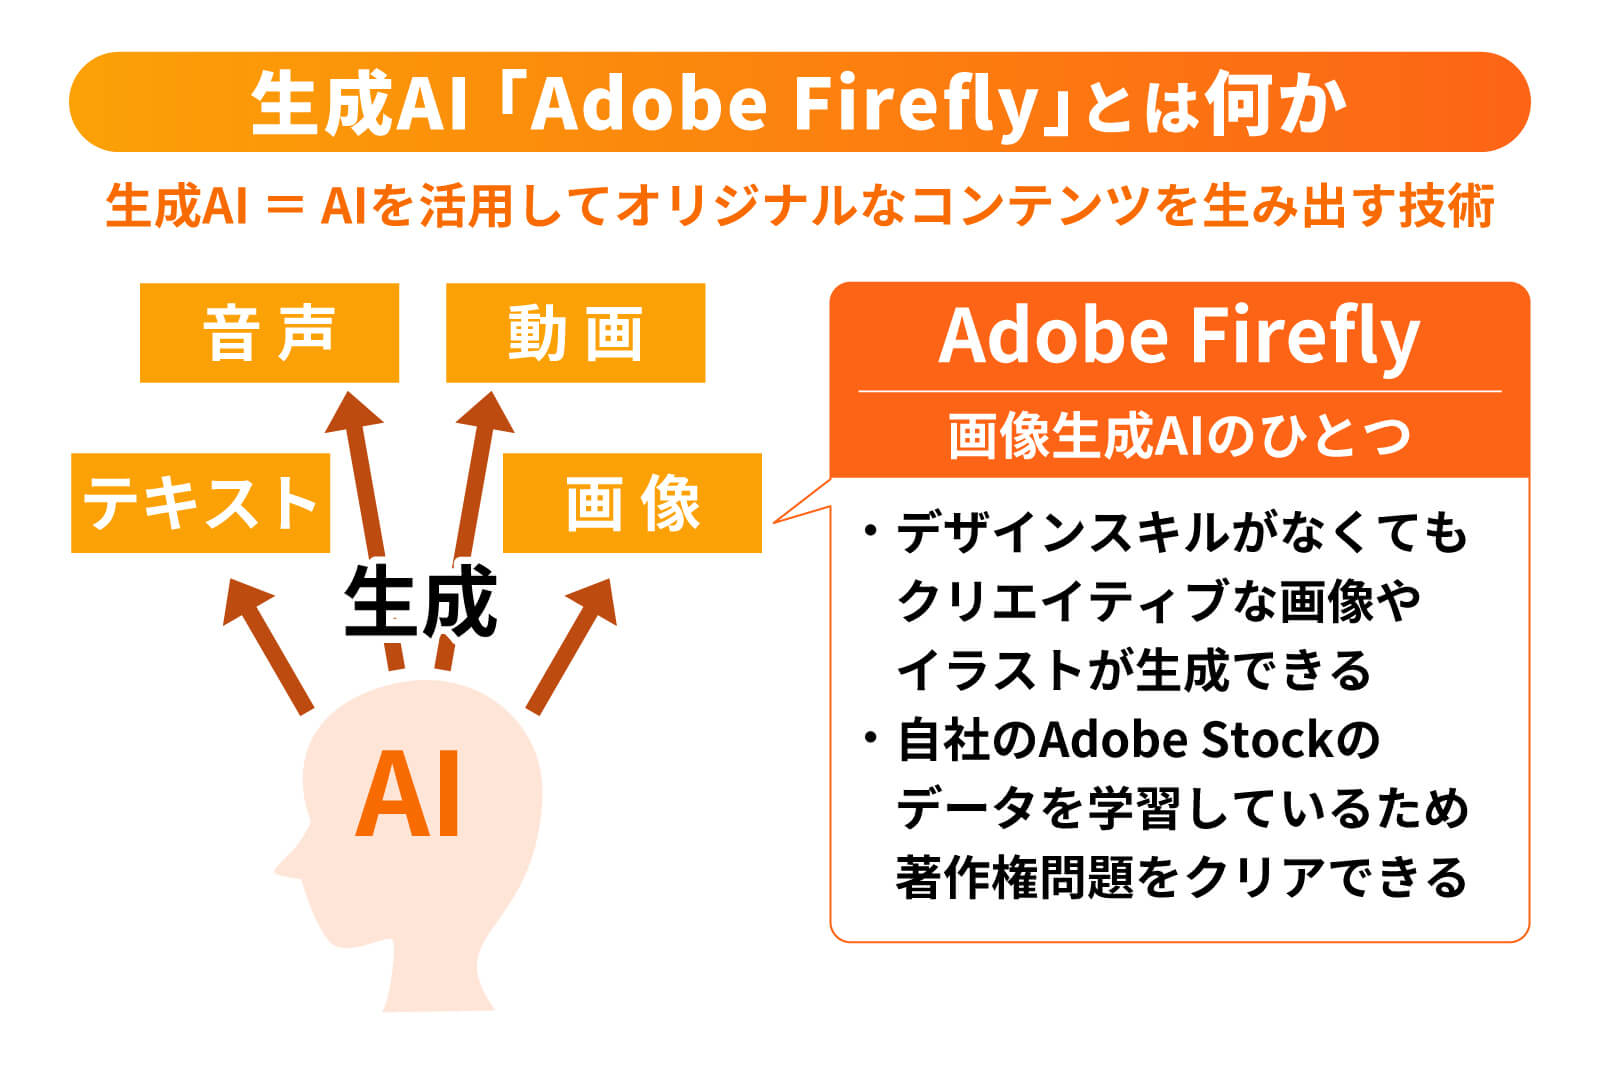 Adobe Fireflyとは何か